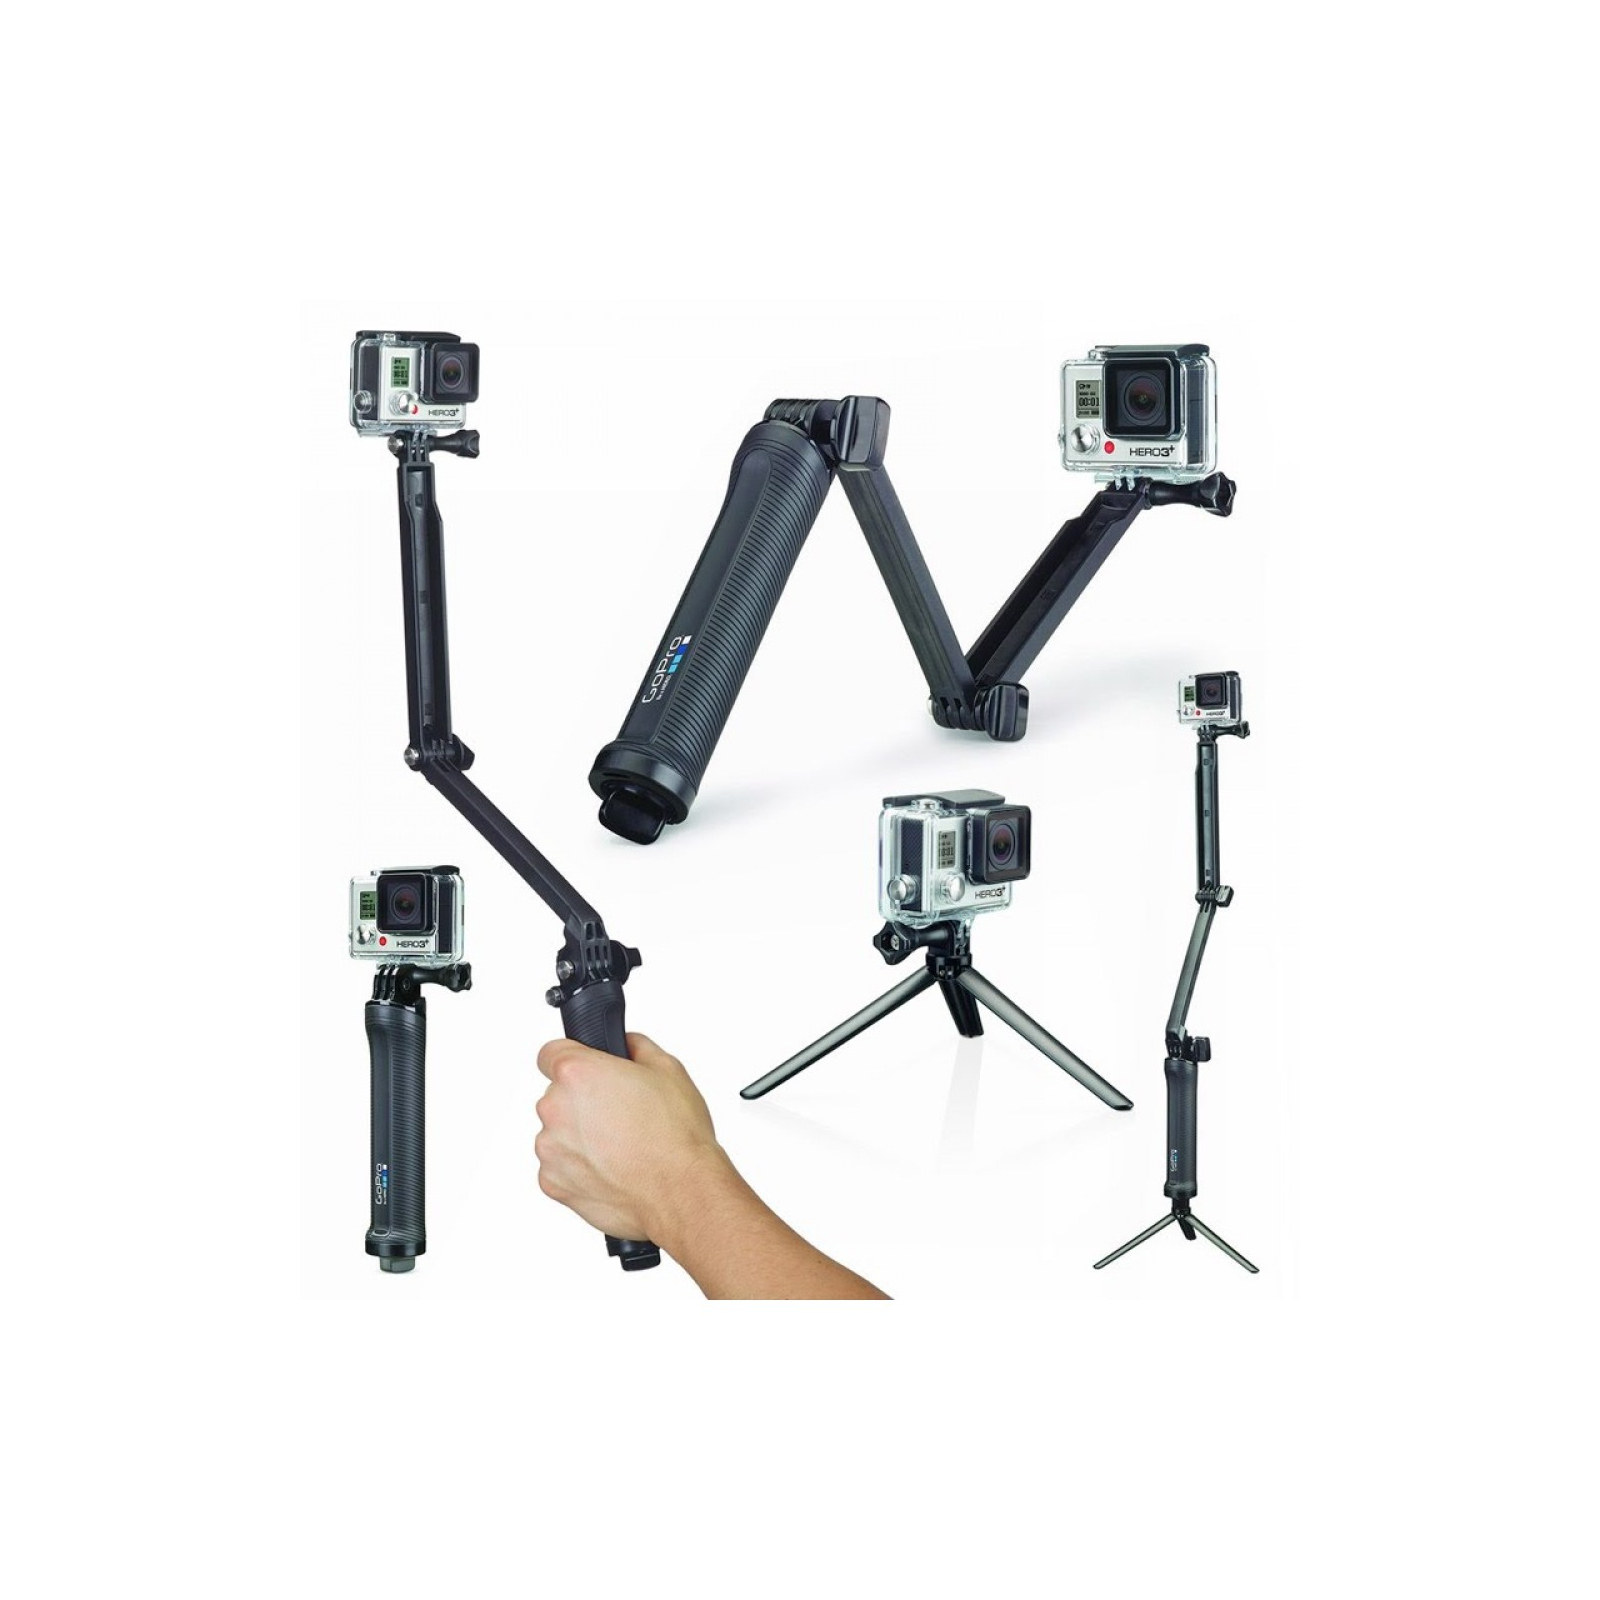 Аксессуар к экшн-камерам GoPro 3-Way Grip/Arm/Tripod (AFAEM-001) изображение 2